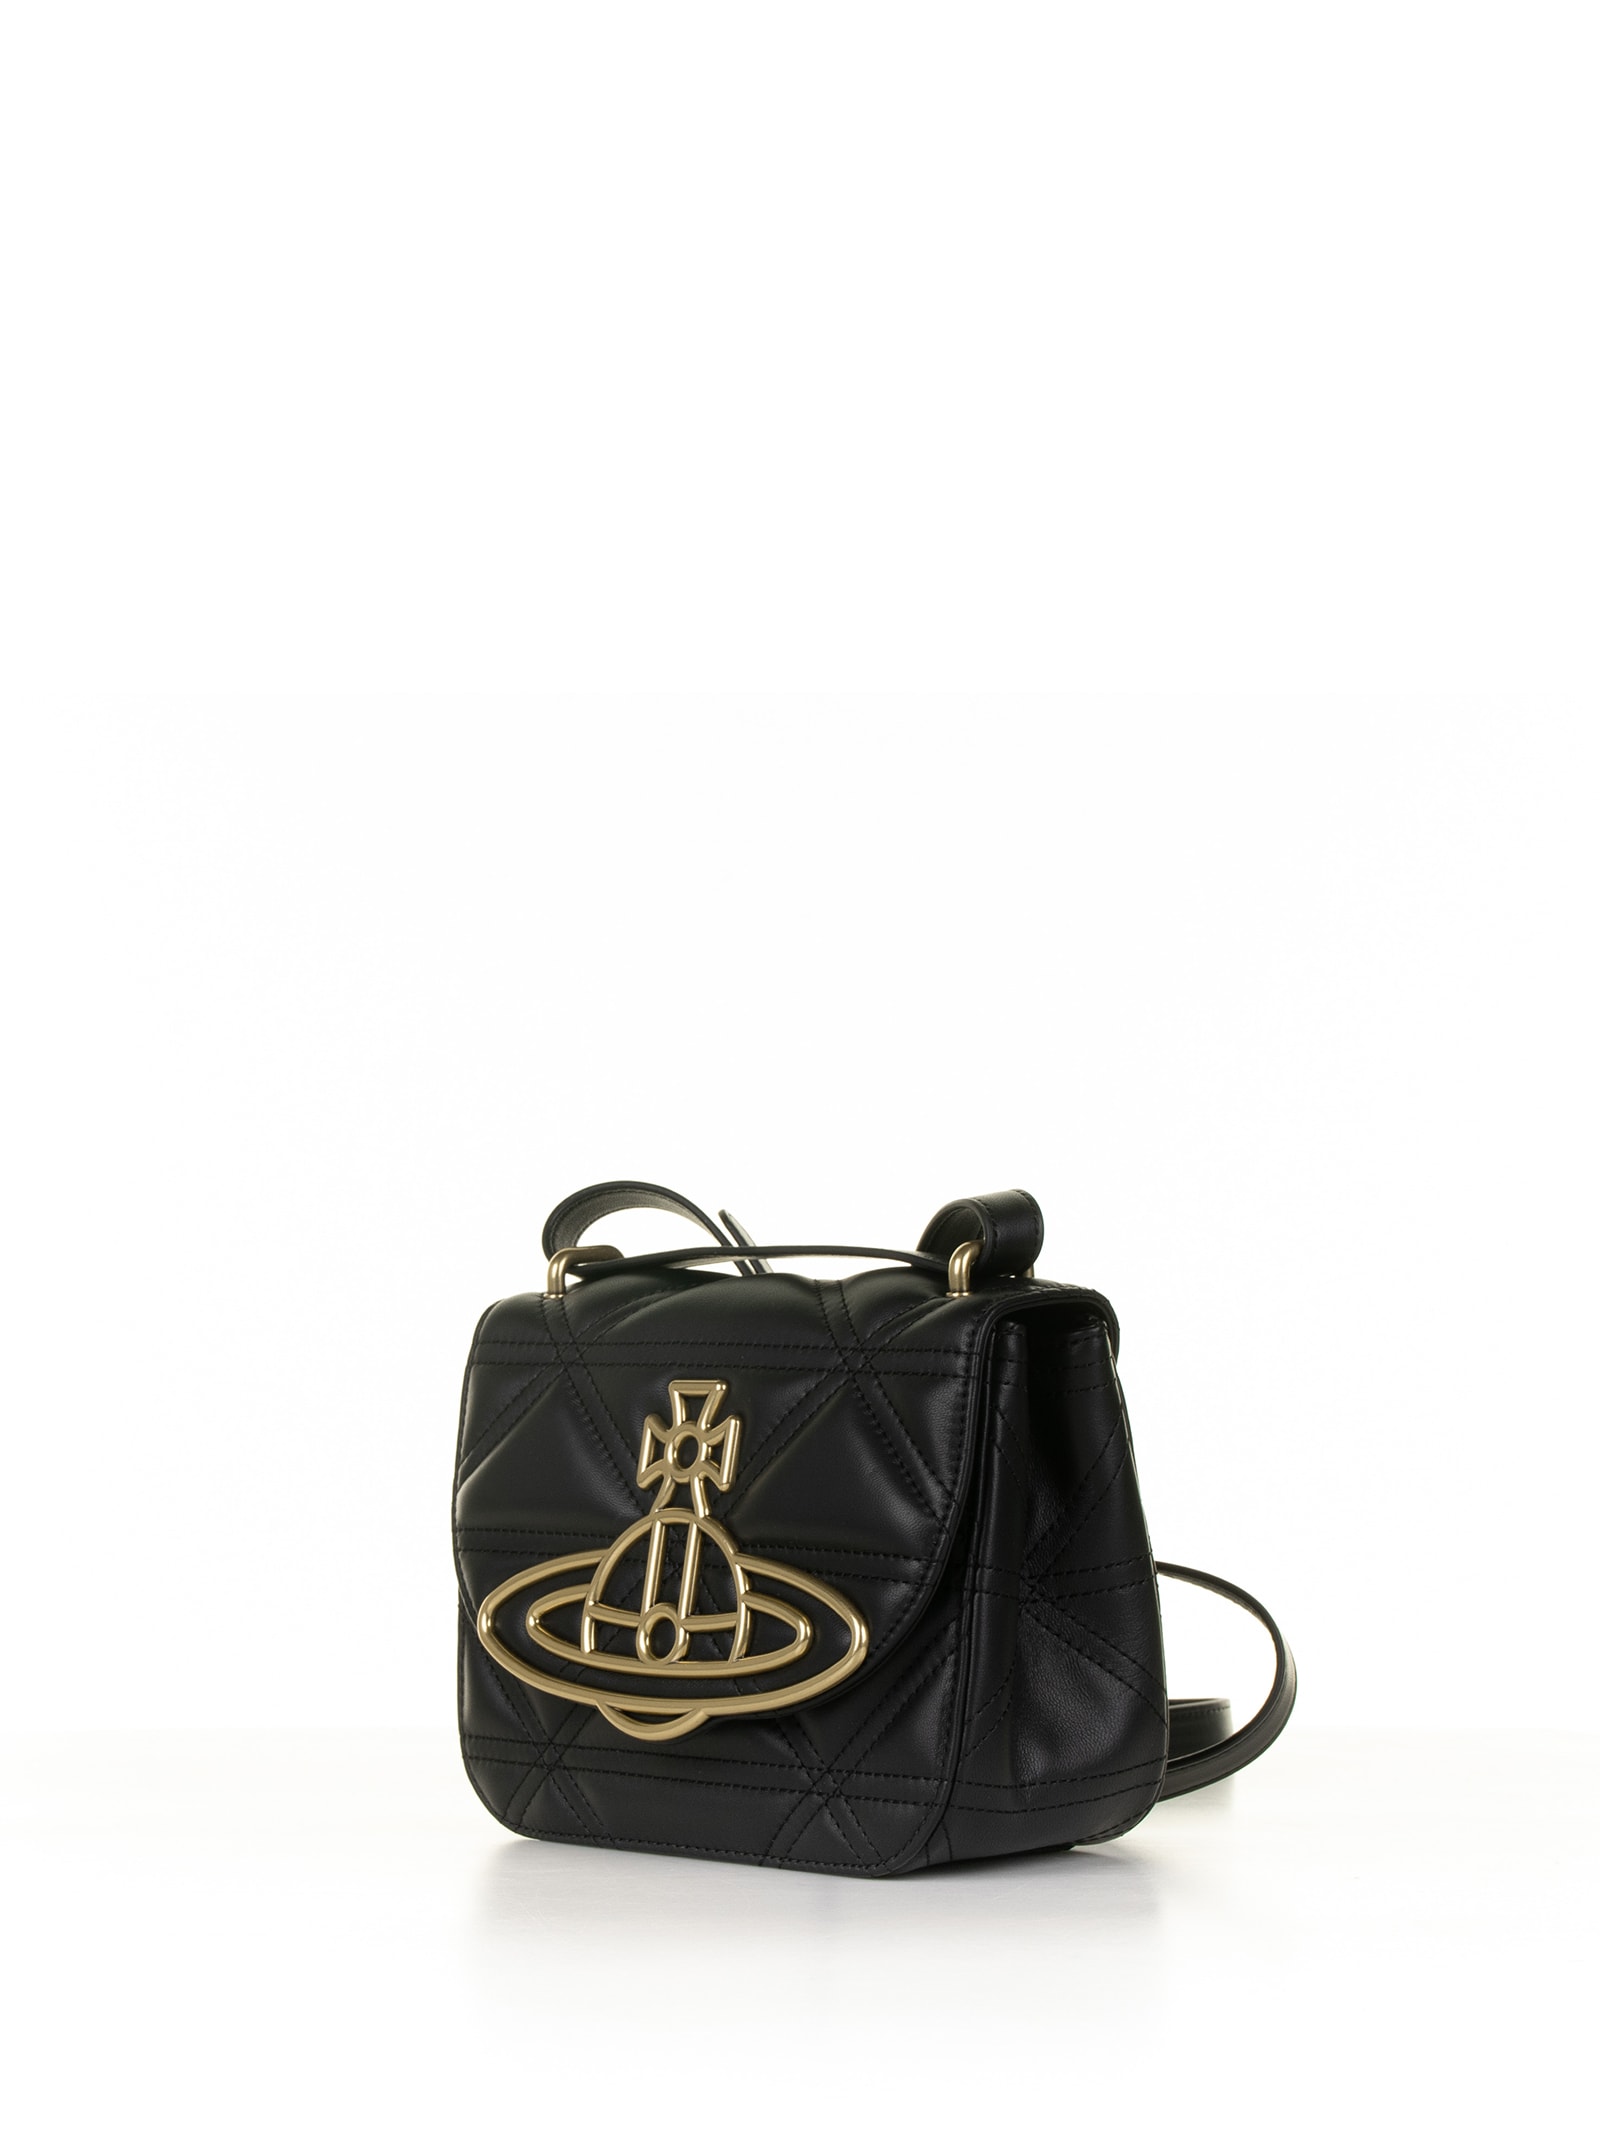 Shop Vivienne Westwood Black Leather Shoulder Bag